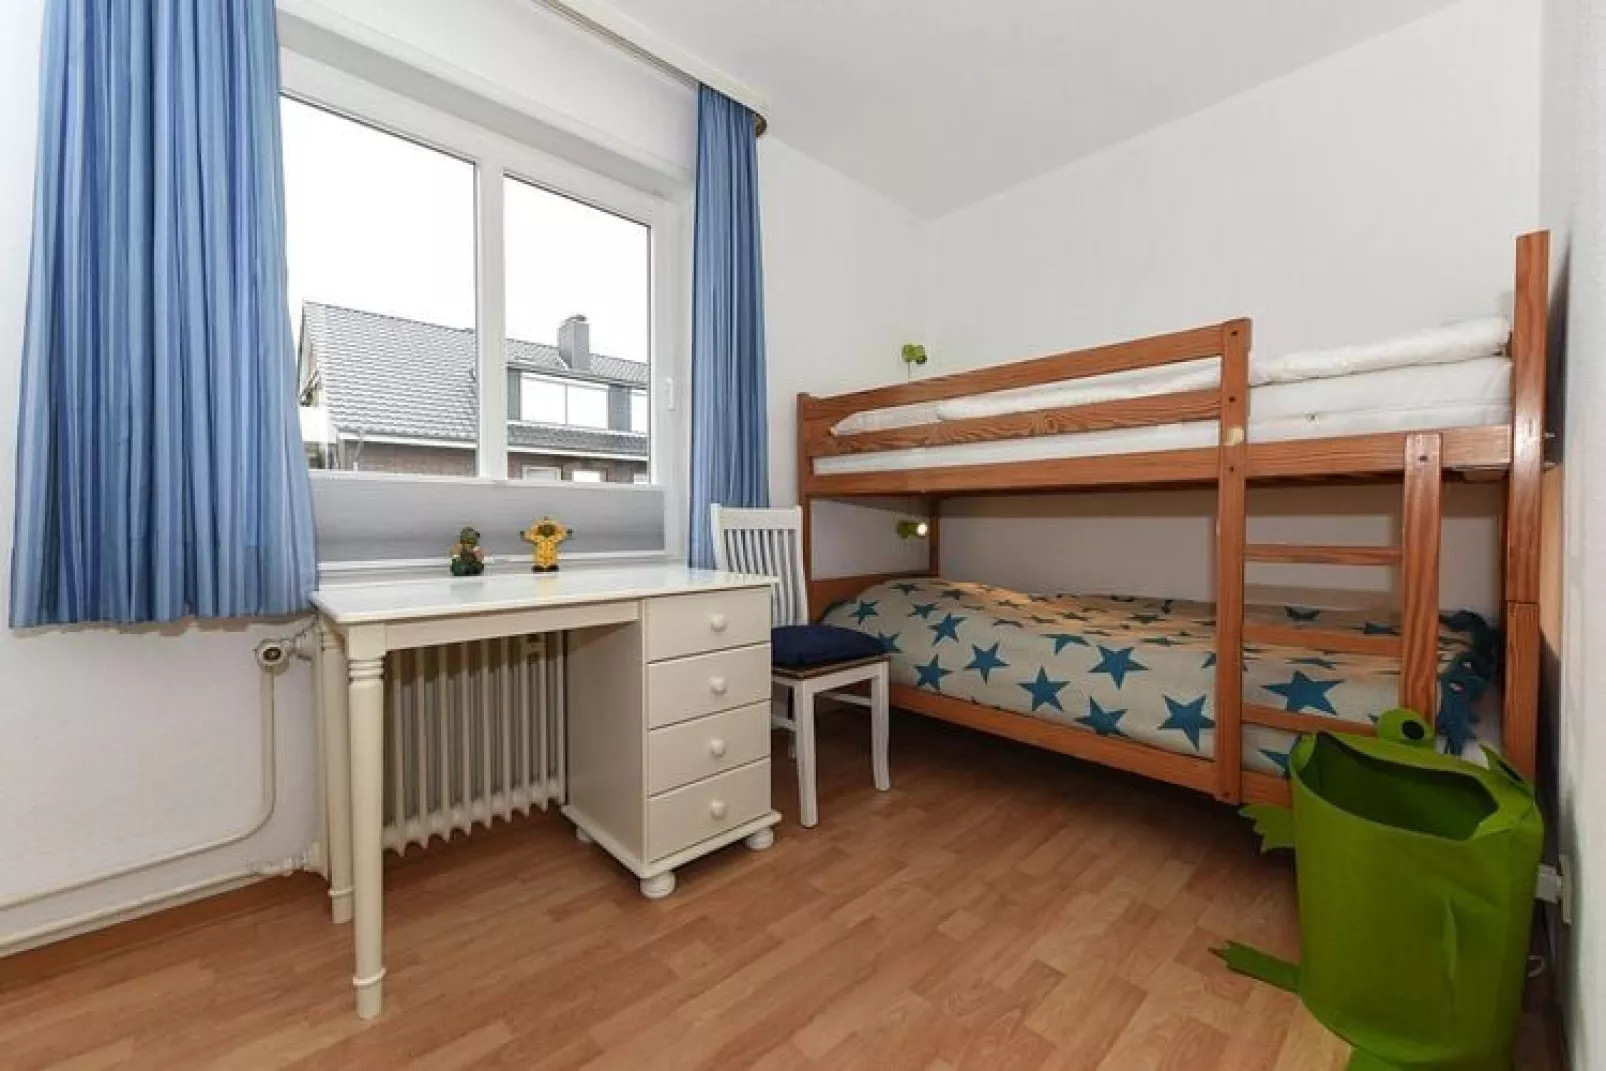 Apartment Wyk auf Föhr3-Raum-AppTyp Nr 2 Arfsten-Slaapkamer